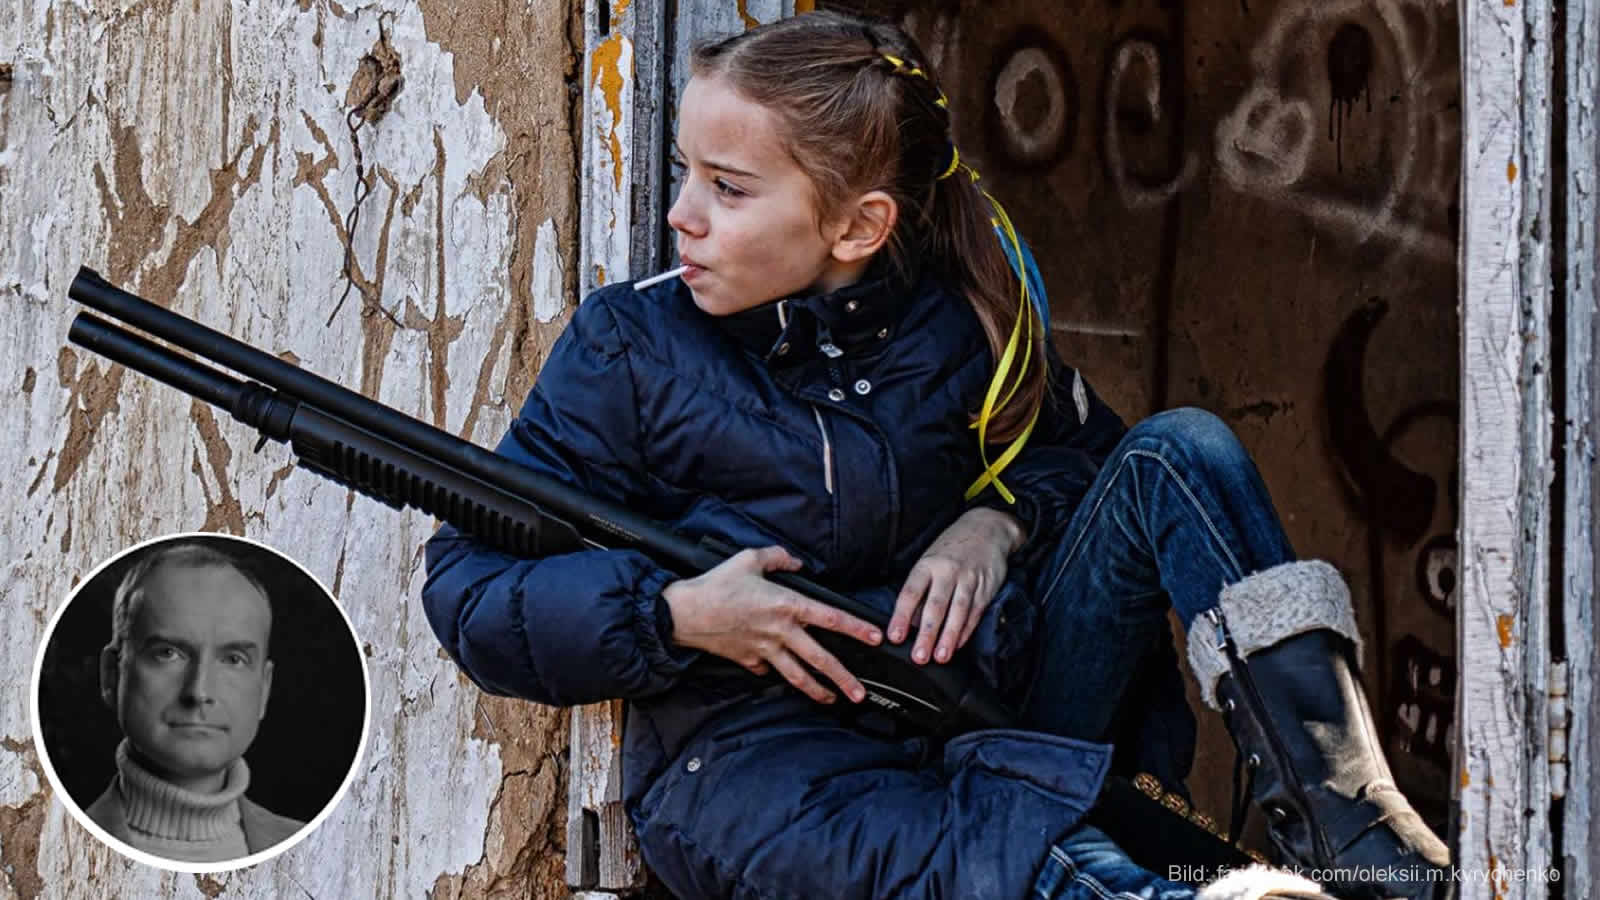 Bild: "Mädchen mit Gewehr und Lillipop" Oleksii Kyrychenko der seine Tochter zwei Tage vor Kriegsbeginn fotografierte